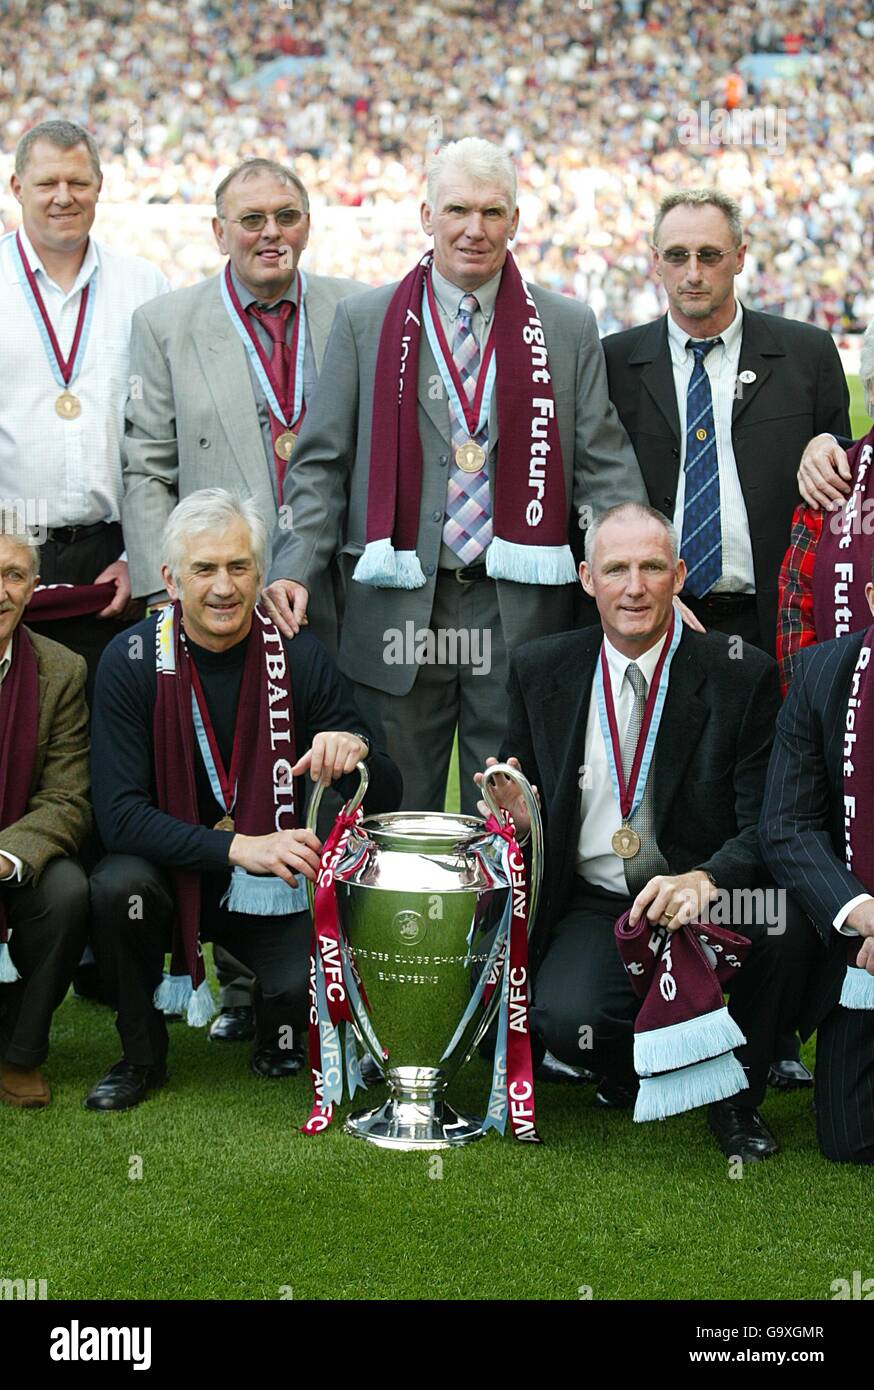 D'anciens joueurs d'Aston Villa, dont Dennis Mortimer (gauche du trophée) et Peter Wisthe (au-dessus du trophée) avec la coupe d'Europe que leur côté a remporté en 1982. Banque D'Images